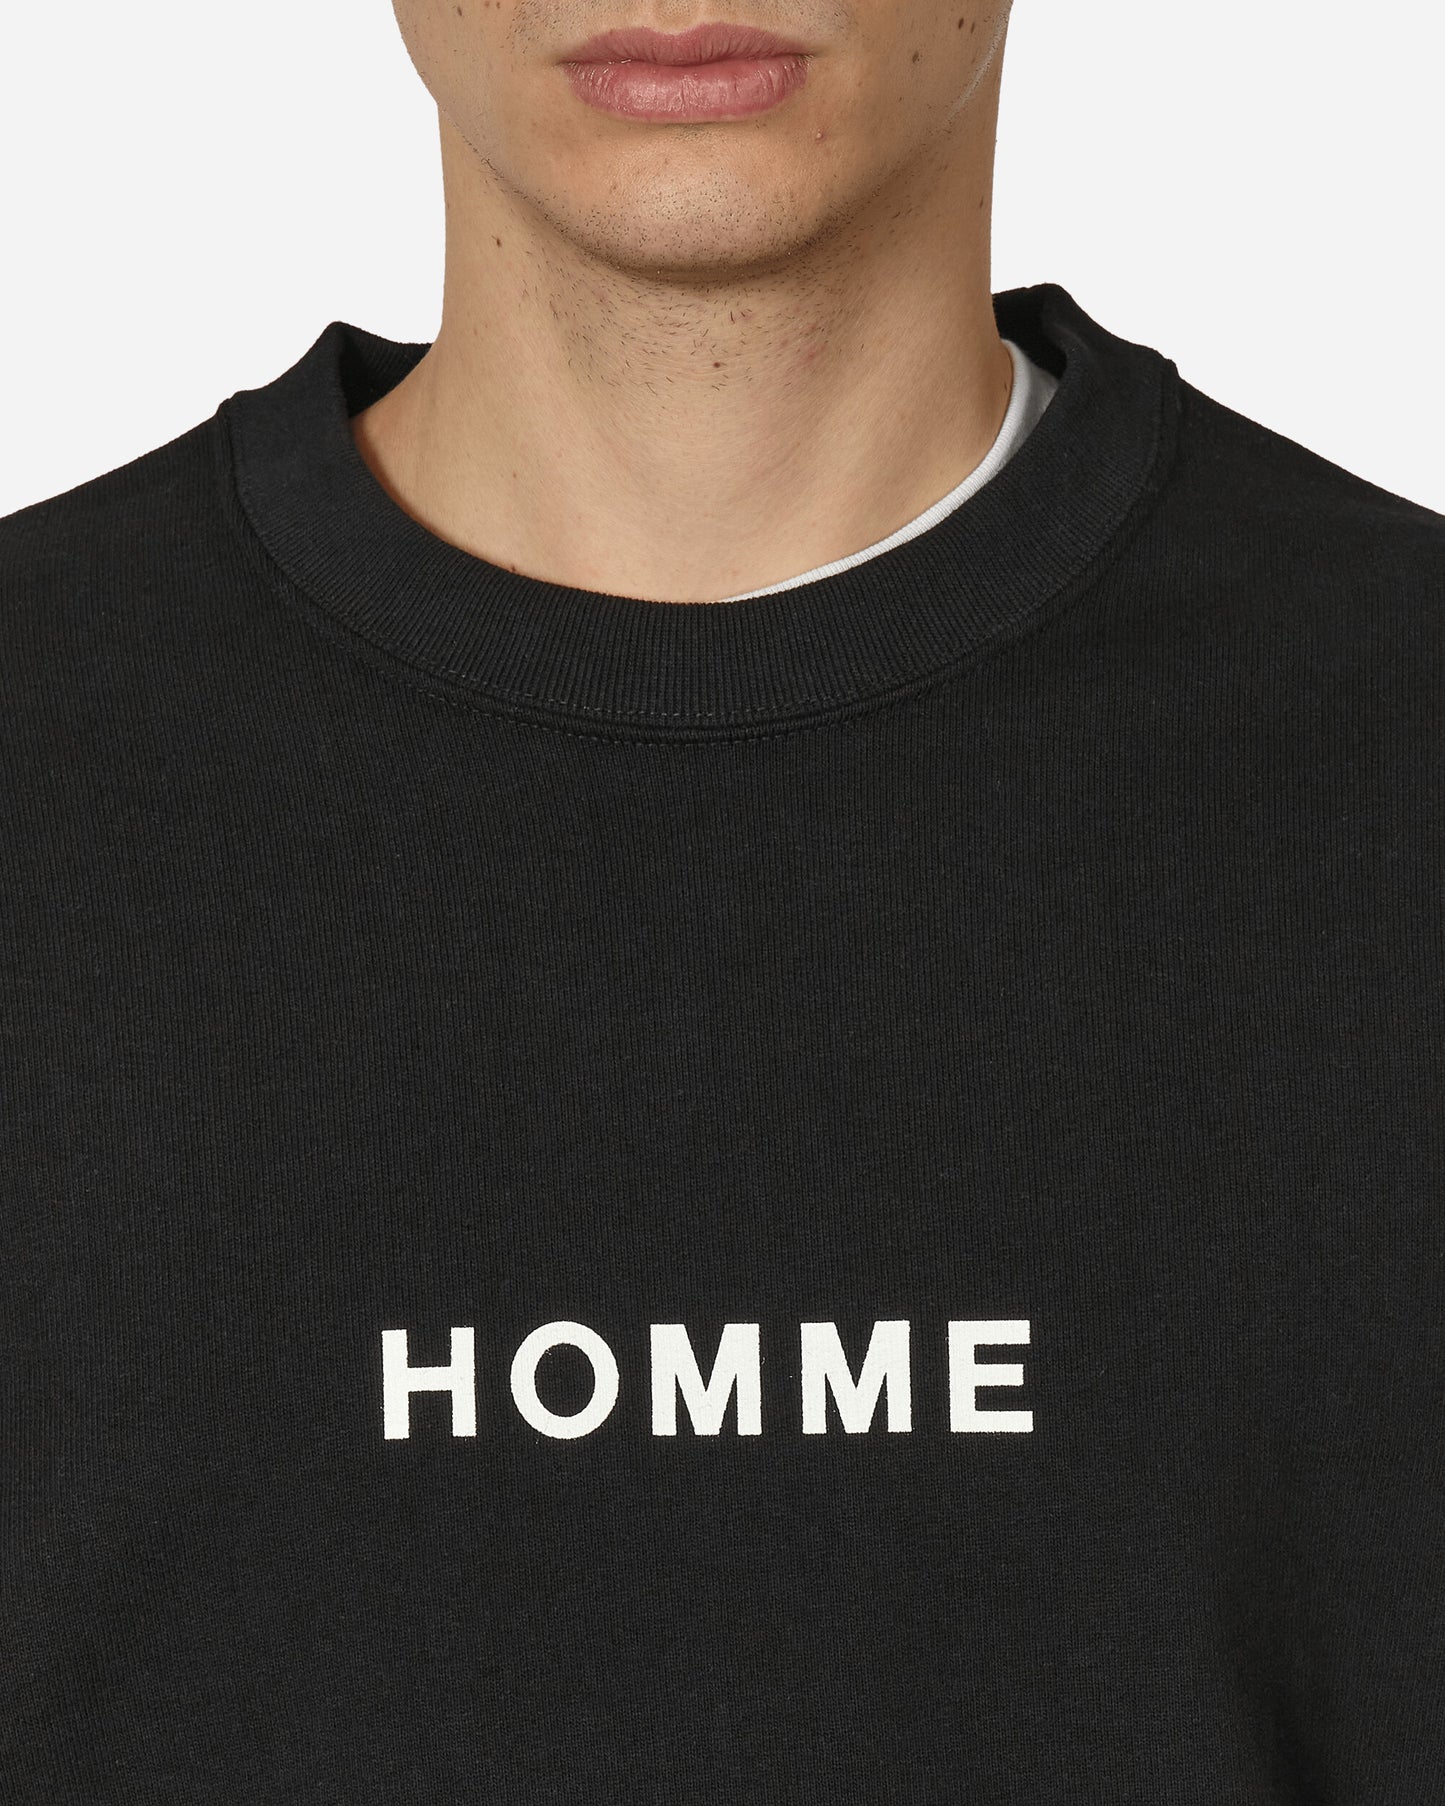 Comme Des Garçons Homme Men'S T-Shirt Black T-Shirts Shortsleeve HM-T104-051 1